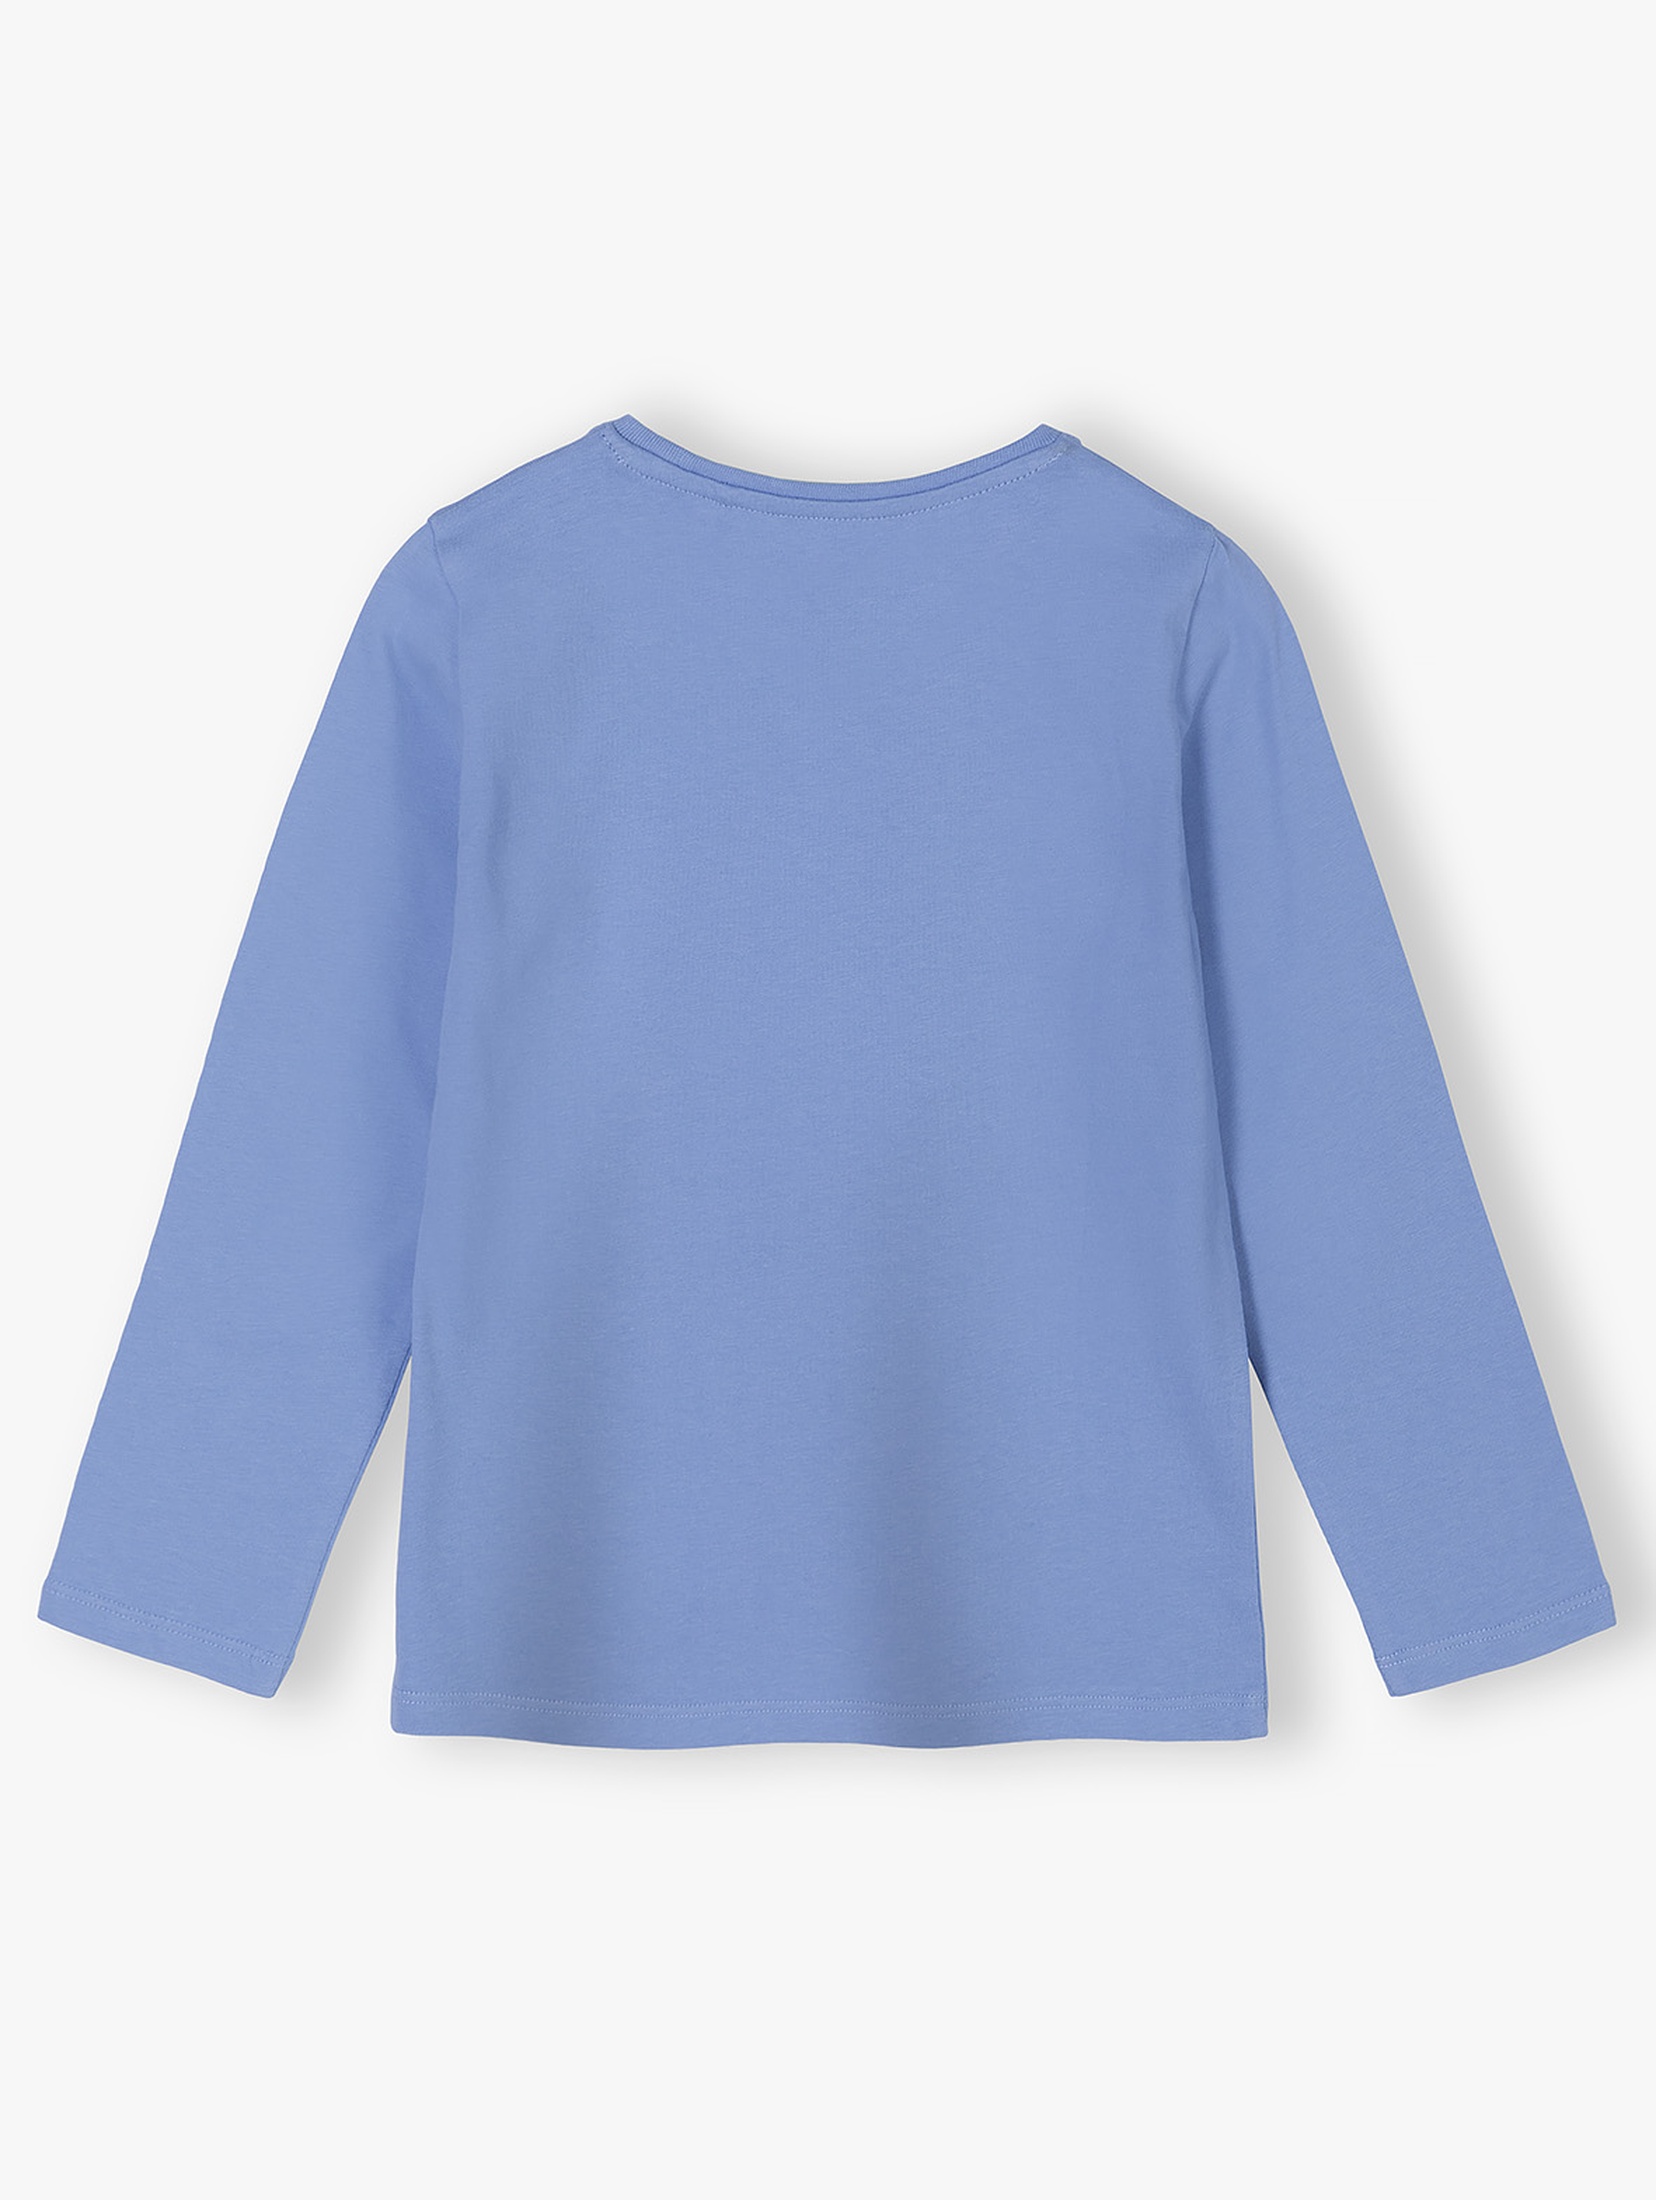 Niebieska dzianinowa bluzka dla dziewczynki - długi rękaw